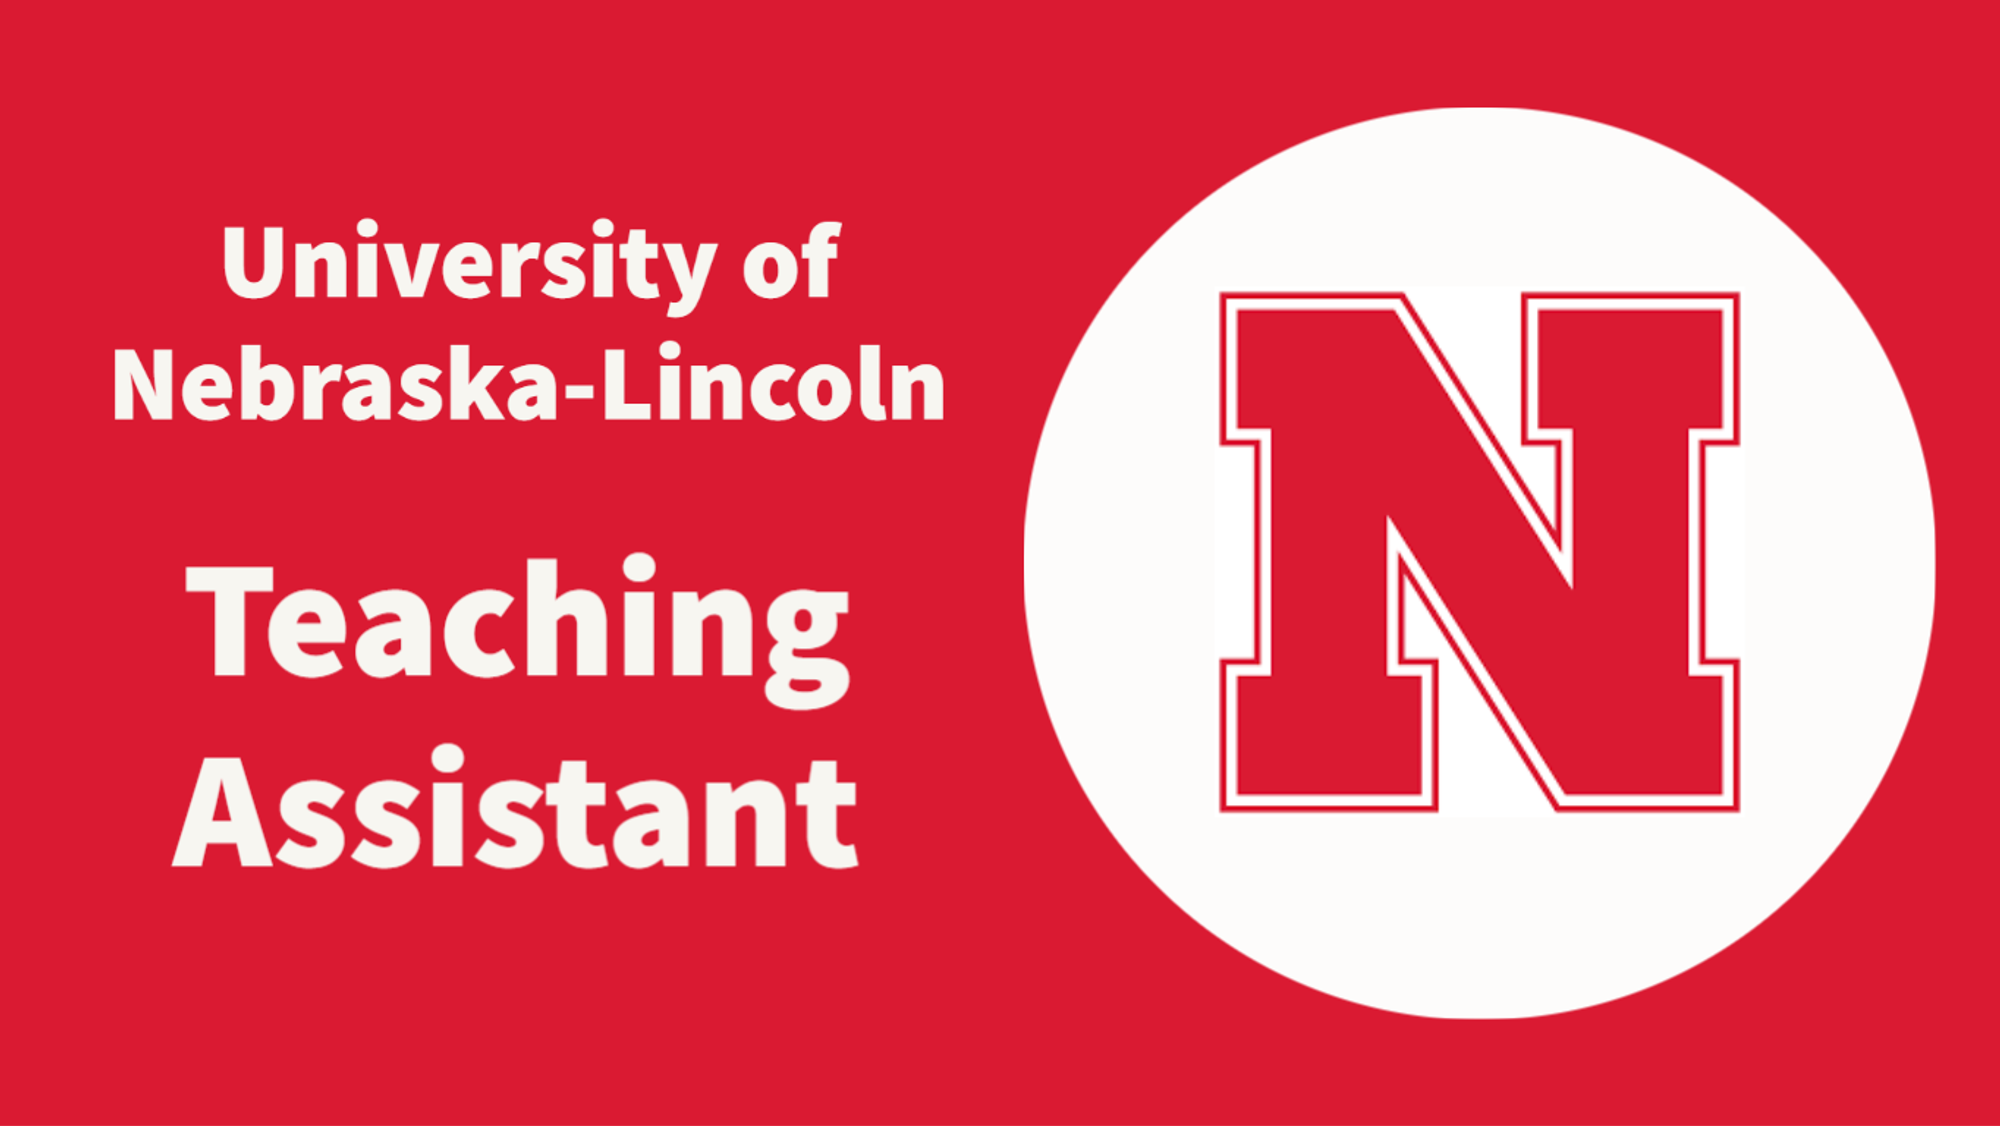 Teaching Assistant - University of Nebraska-Lincoln